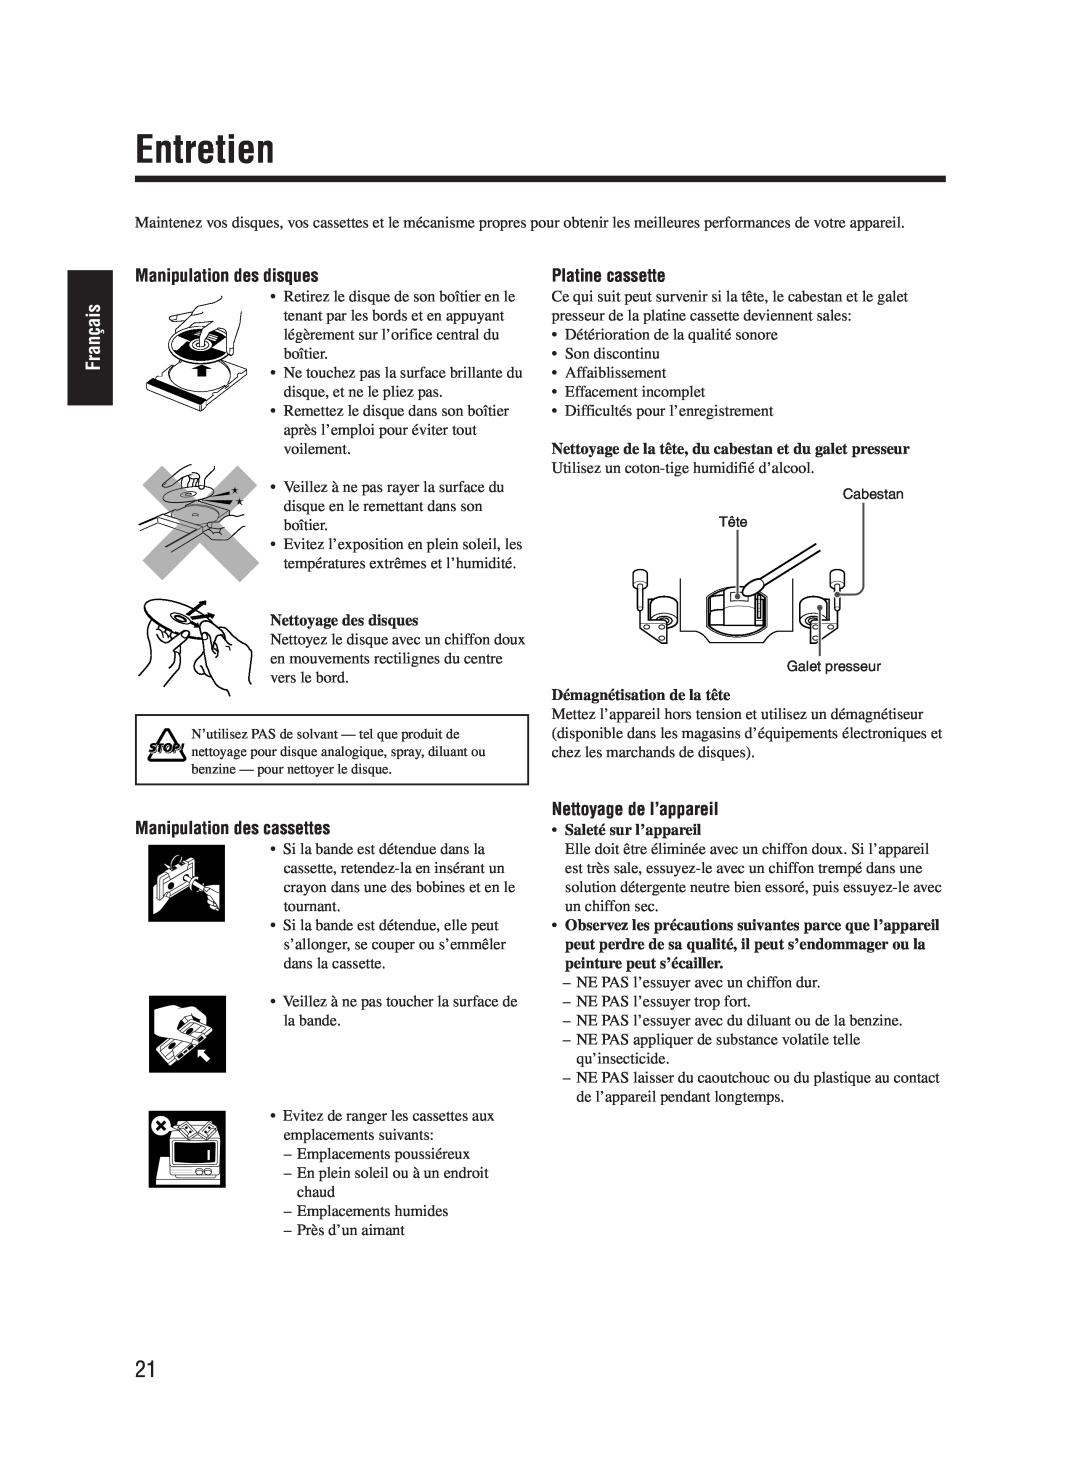 JVC UX-M55 manual Entretien, Français, Manipulation des disques, Platine cassette, Manipulation des cassettes 